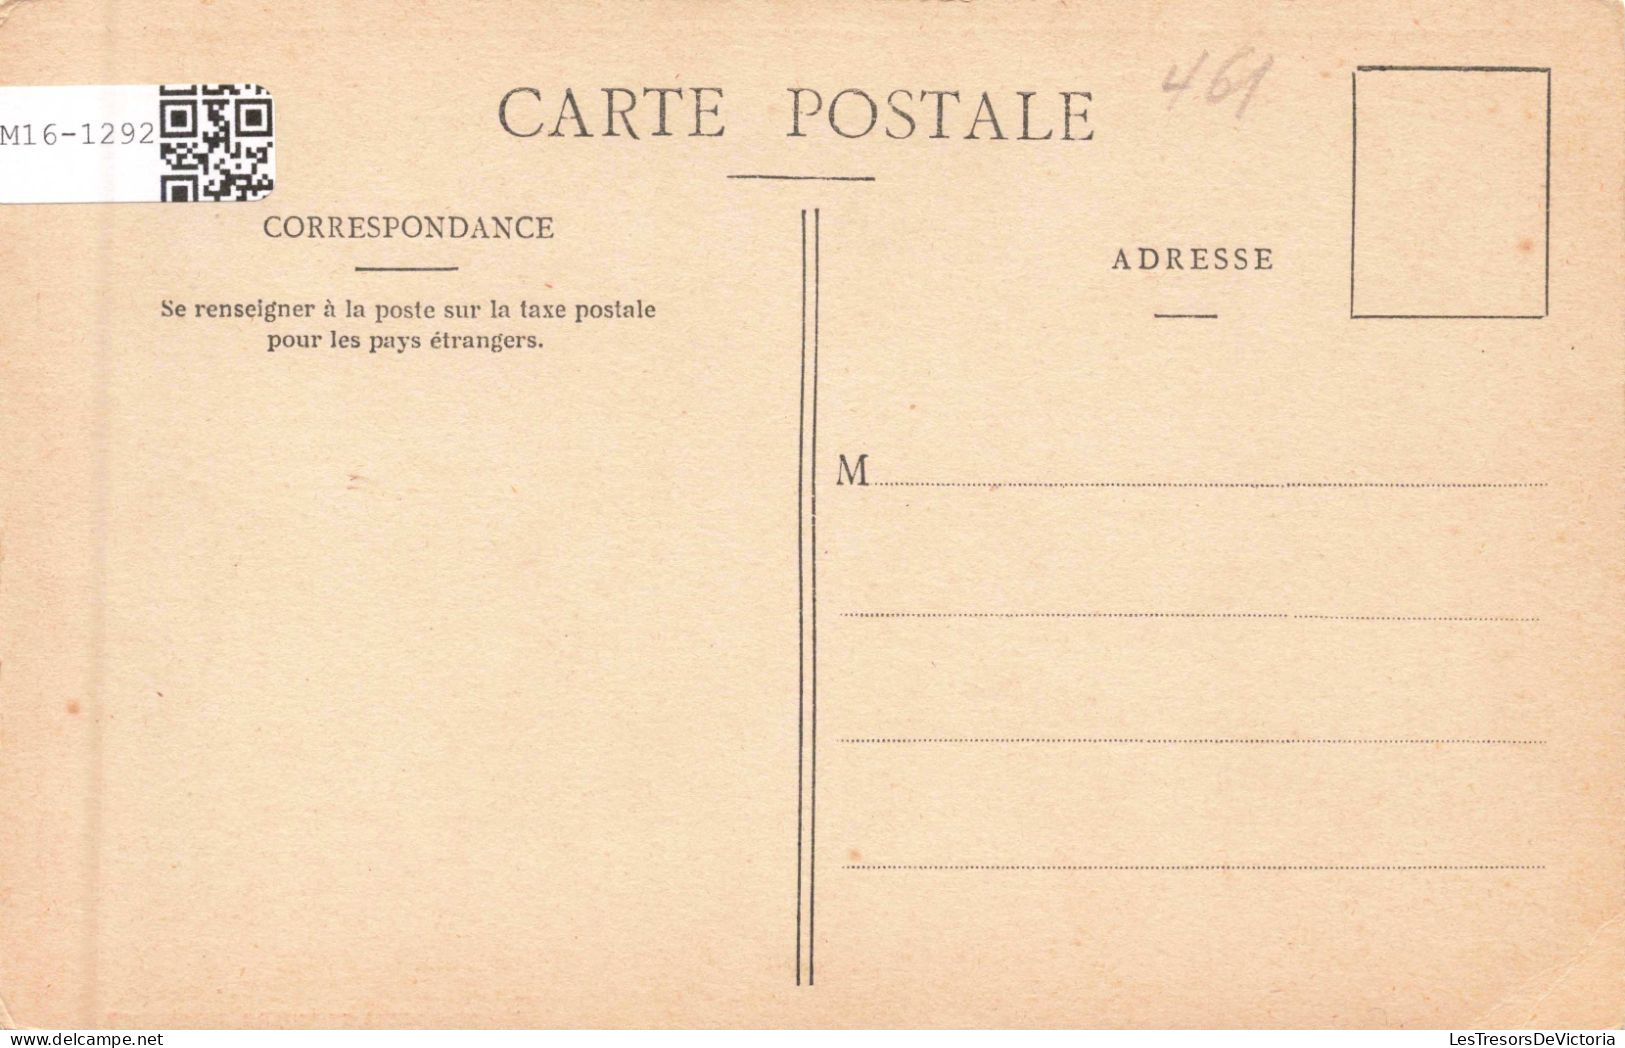 FRANCE - Nice - La Poissonnerie -Colorisé - Carte Postale Ancienne - Mercadillos